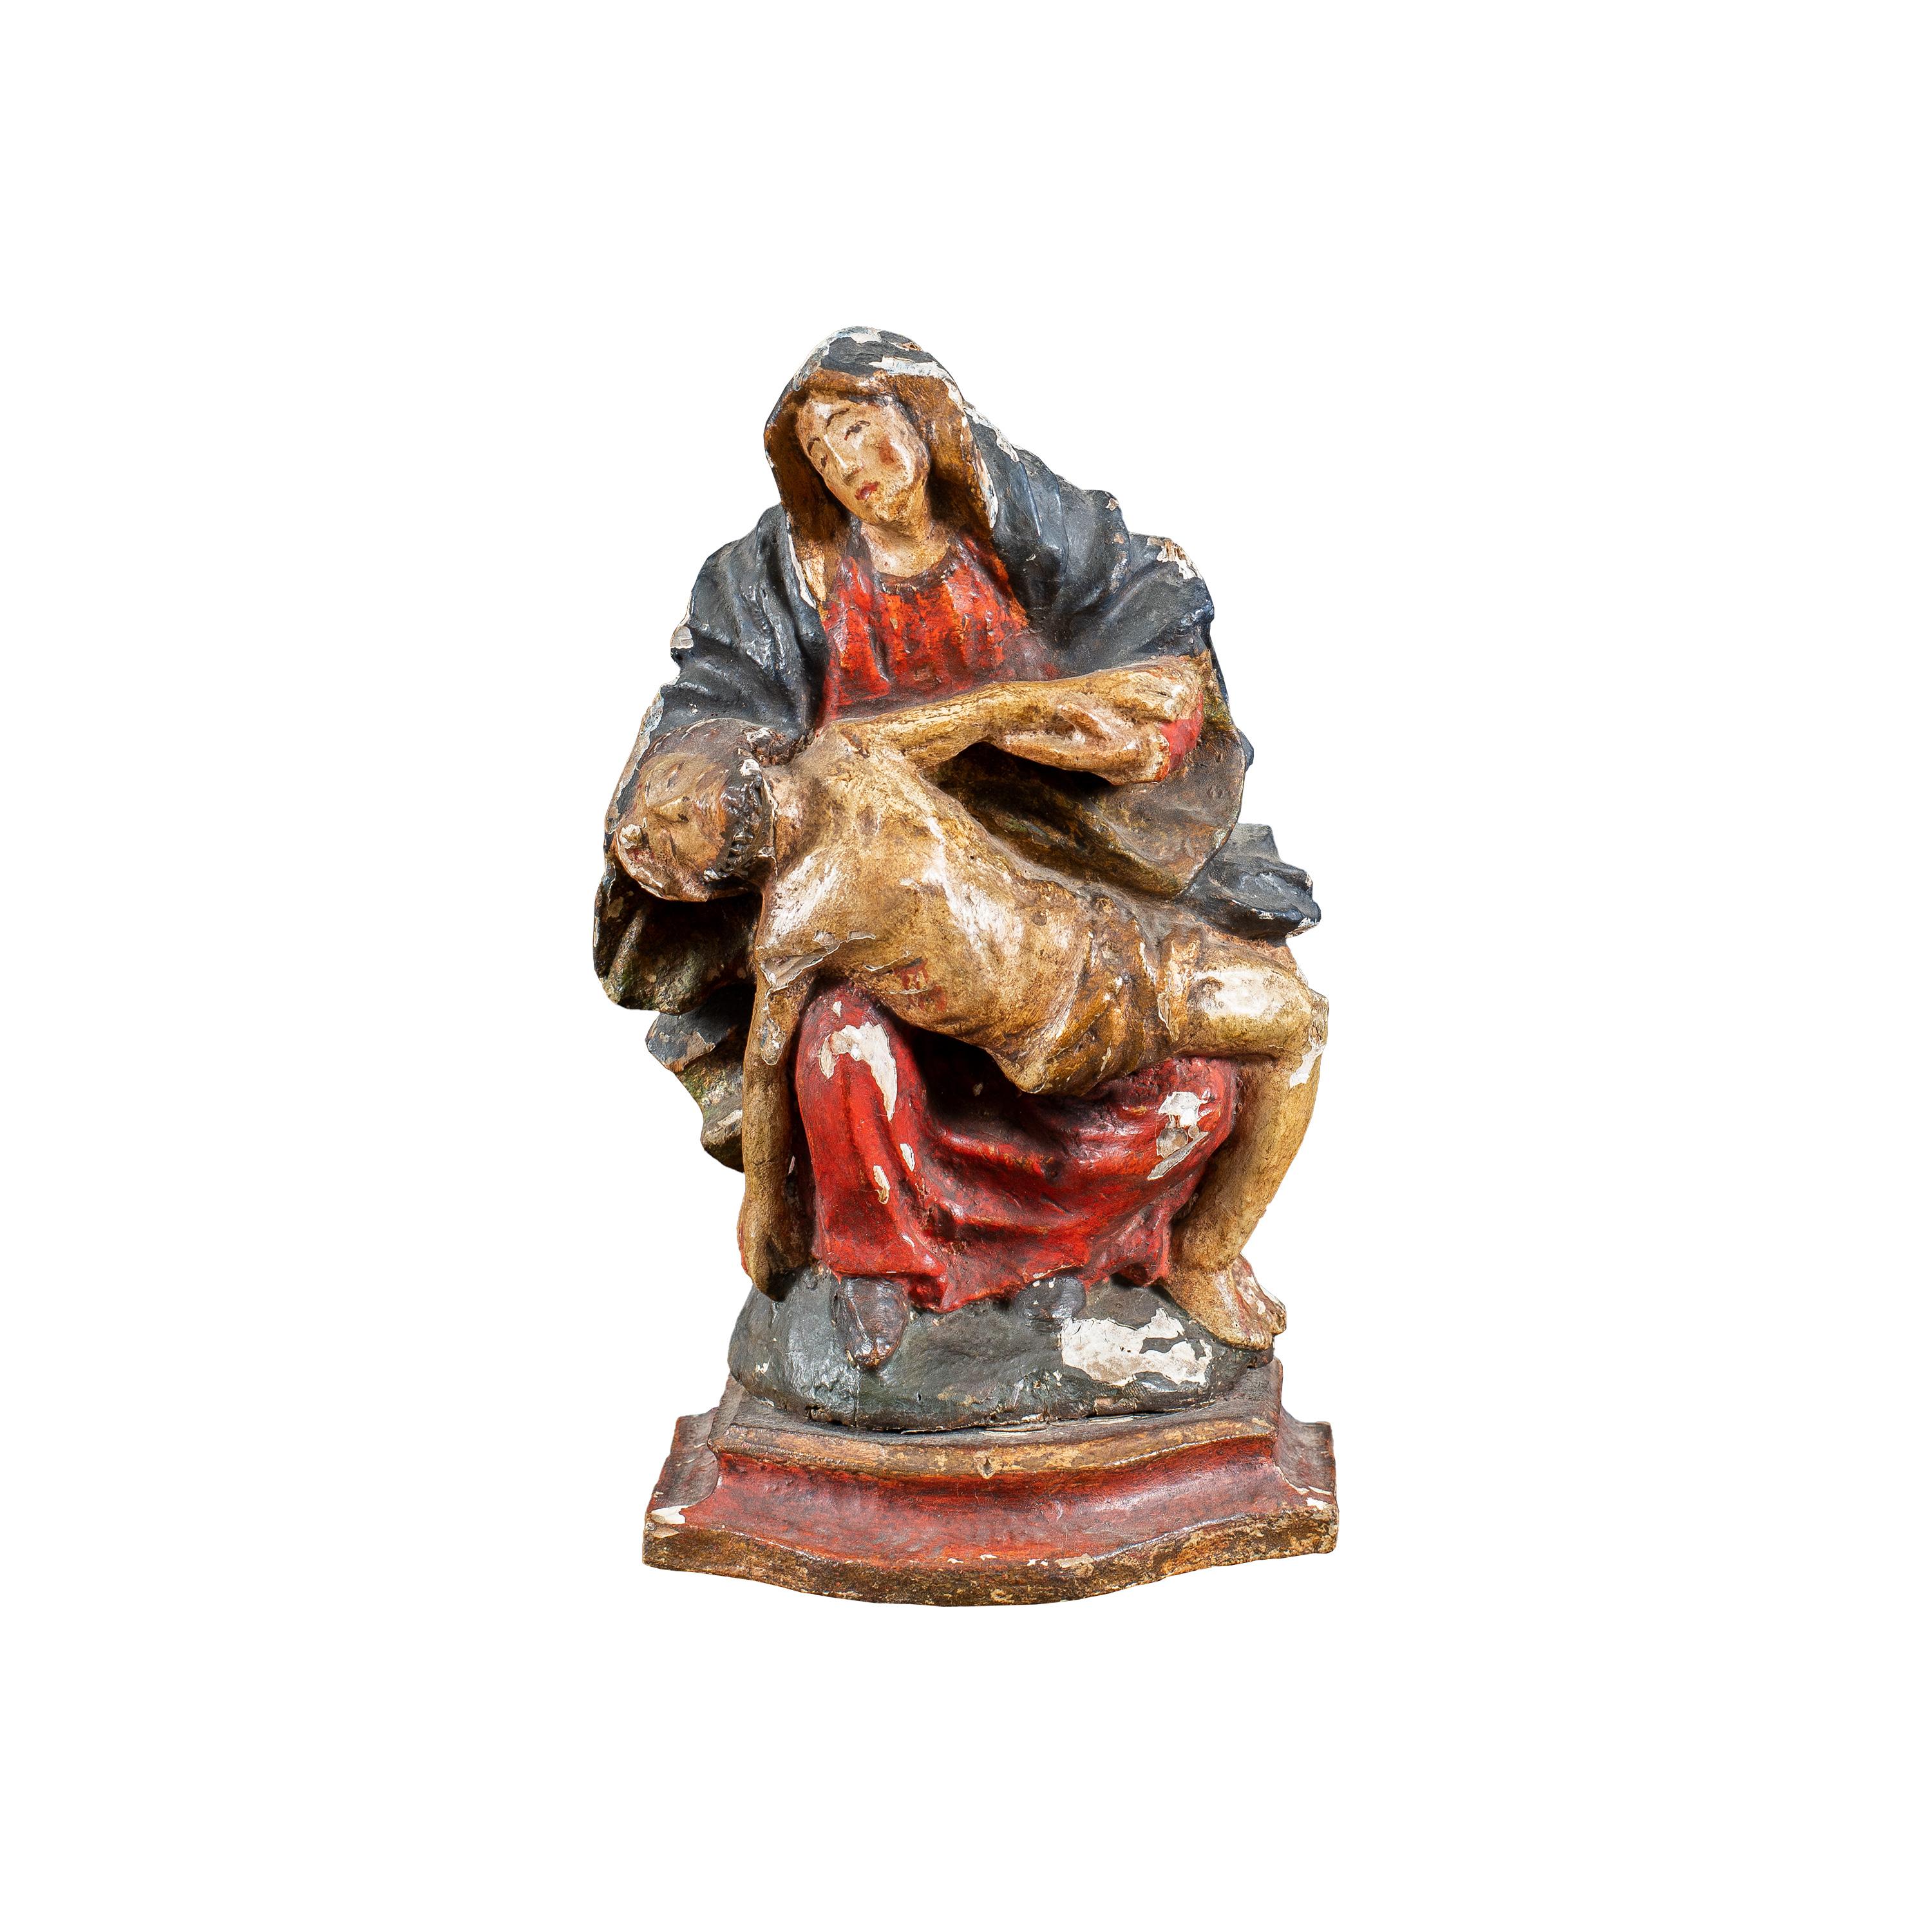 Figurative Sculpture Unknown - Master italien - Sculpture de figures du XVIIIe siècle - Trinité vierge - Peinture en bois sculpté